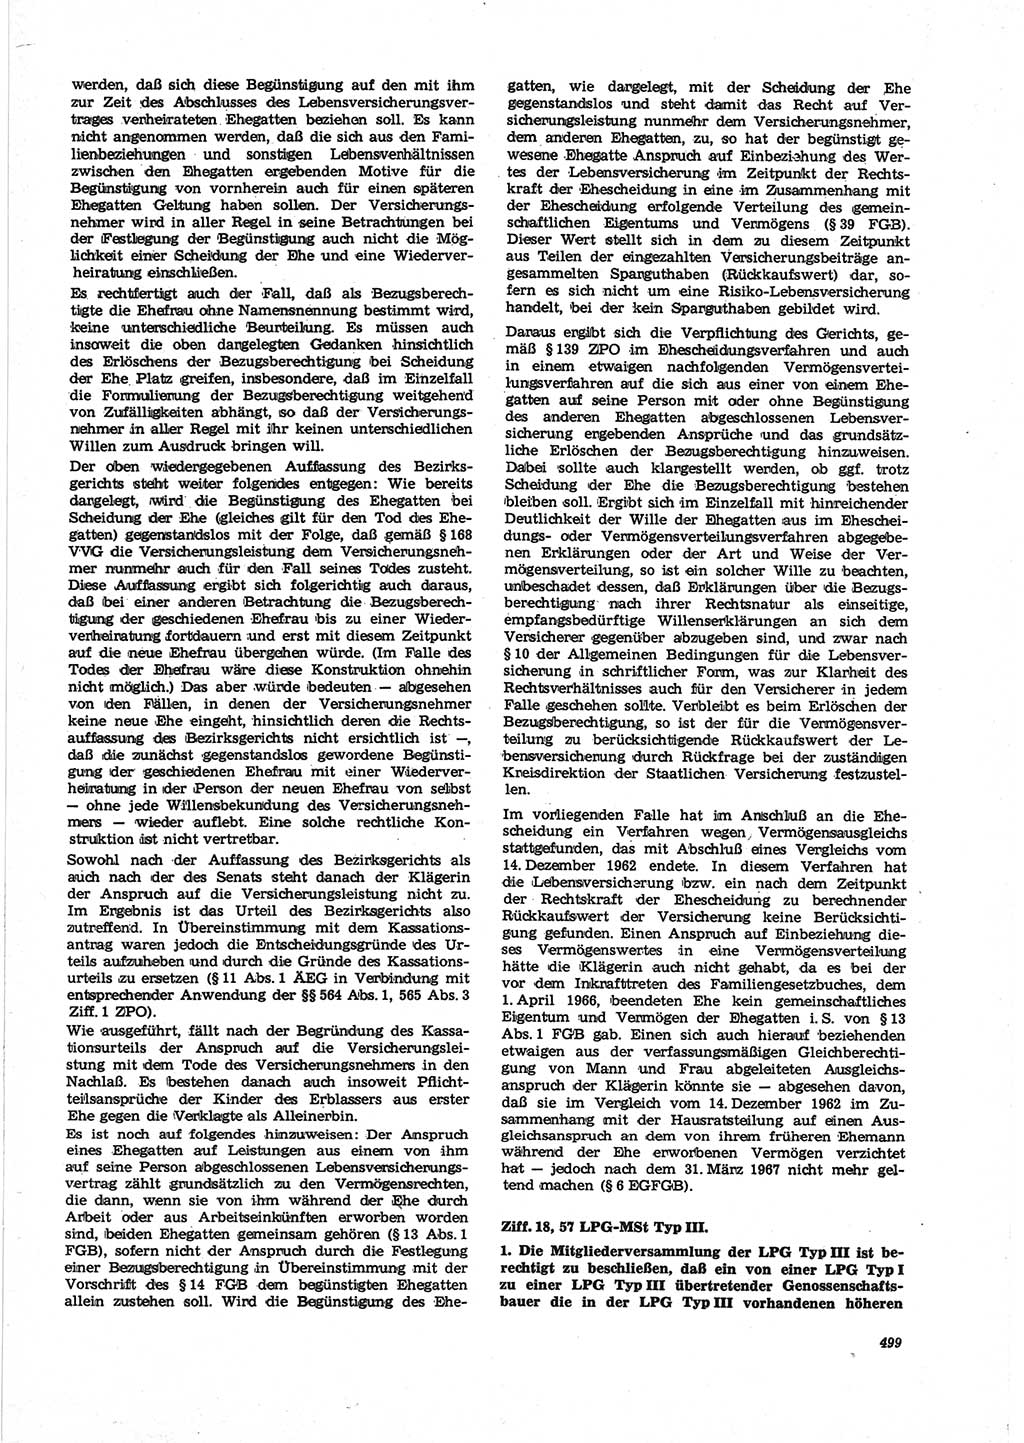 Neue Justiz (NJ), Zeitschrift für Recht und Rechtswissenschaft [Deutsche Demokratische Republik (DDR)], 25. Jahrgang 1971, Seite 499 (NJ DDR 1971, S. 499)